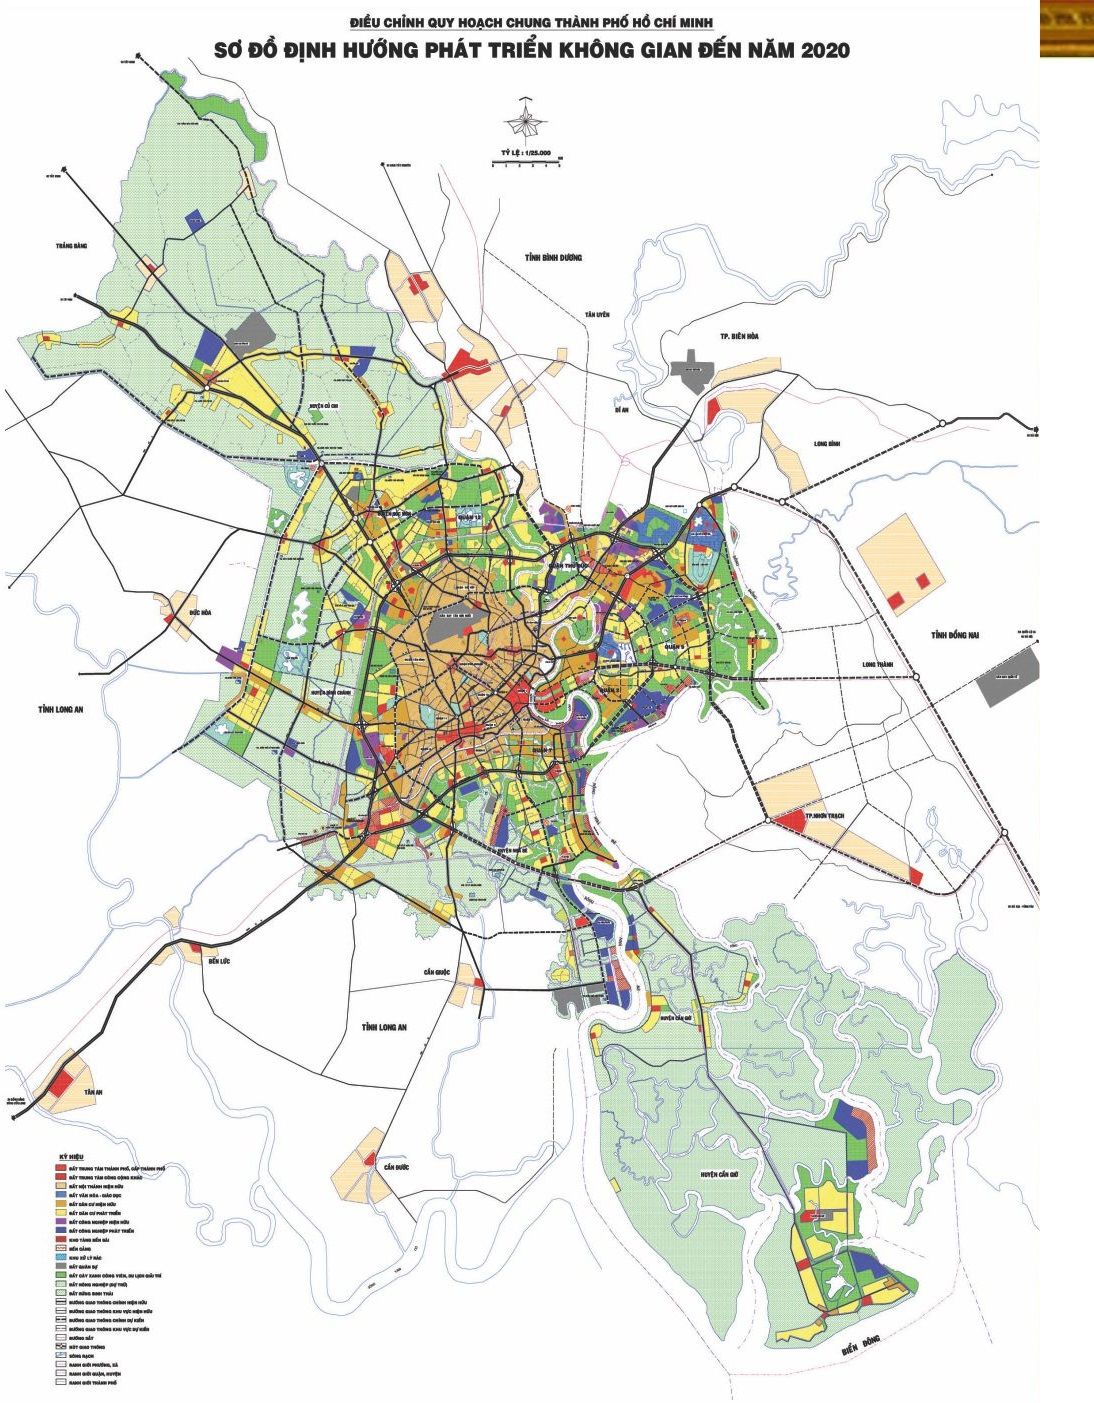 Thông tin bản đồ điều chỉnh quy hoạch xây dựng chung thành phố Hồ Chí Minh đến năm 2020